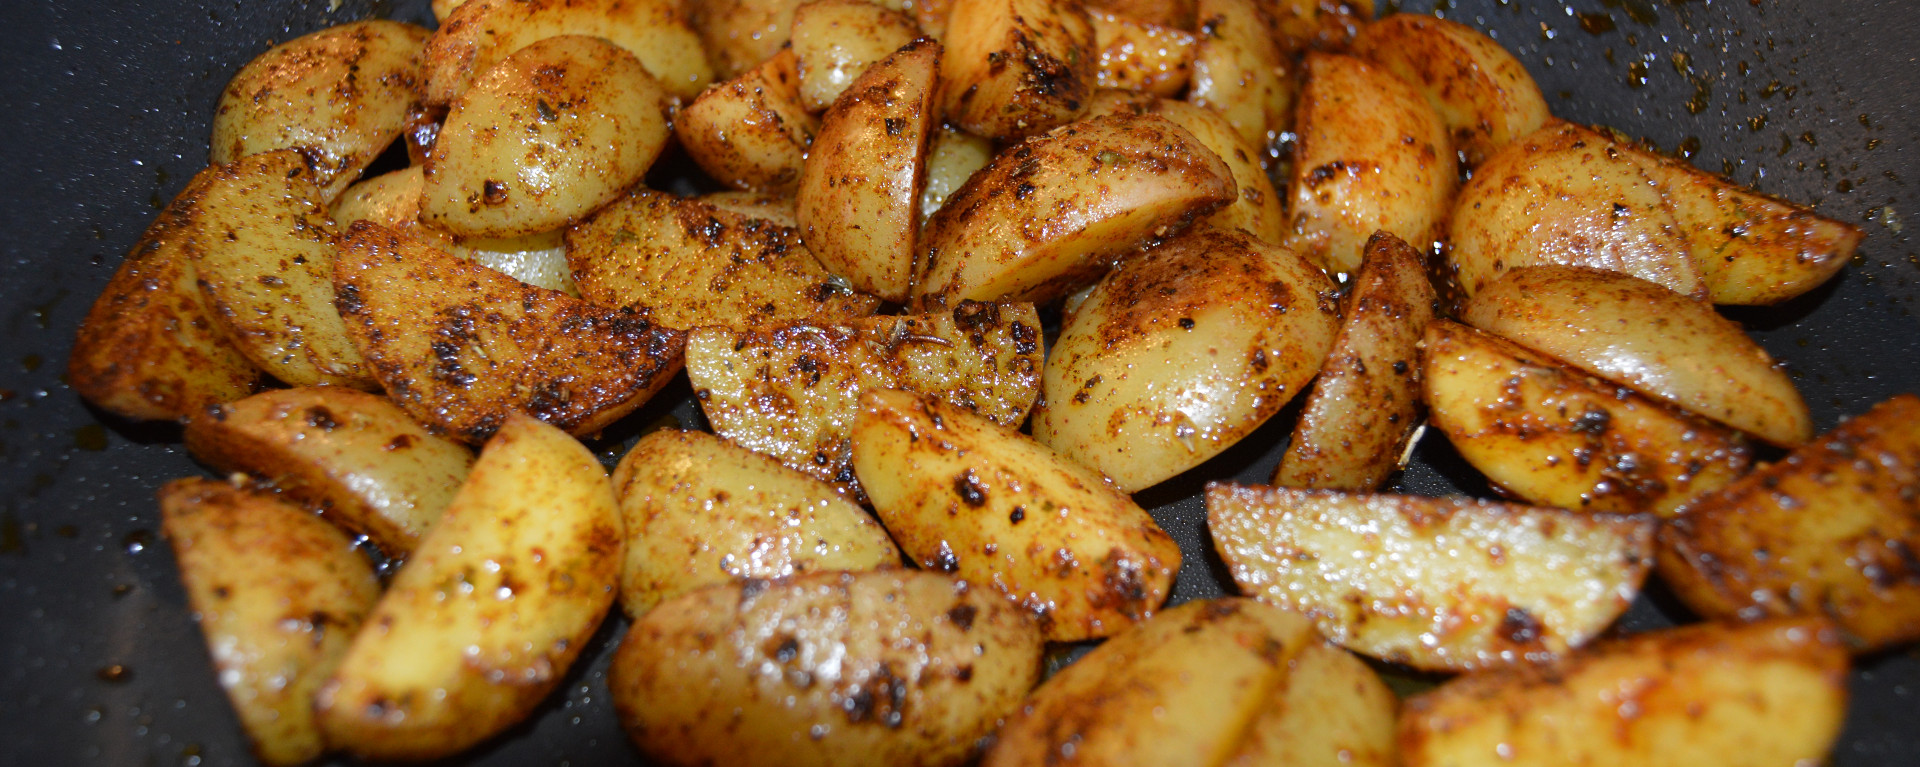 ChefNorway’s spicy potatoes